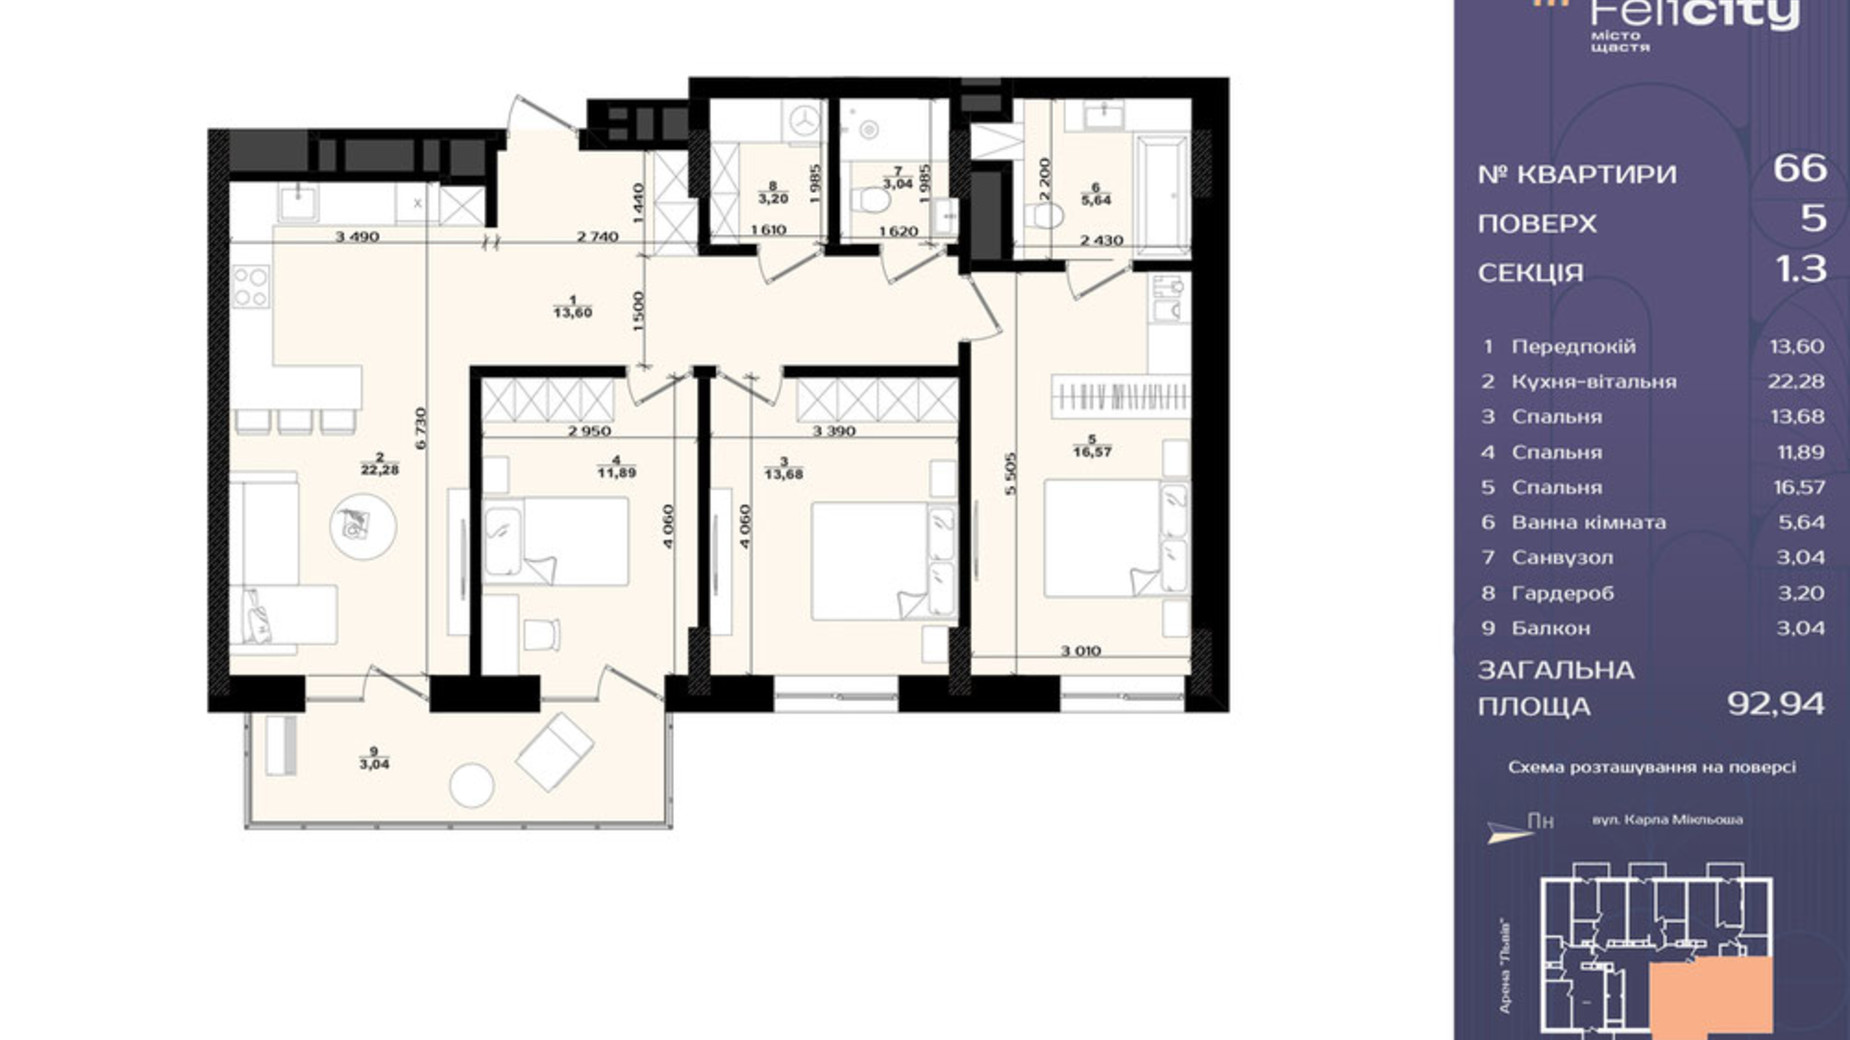 Планировка 3-комнатной квартиры в ЖК Felicity 92.94 м², фото 709721